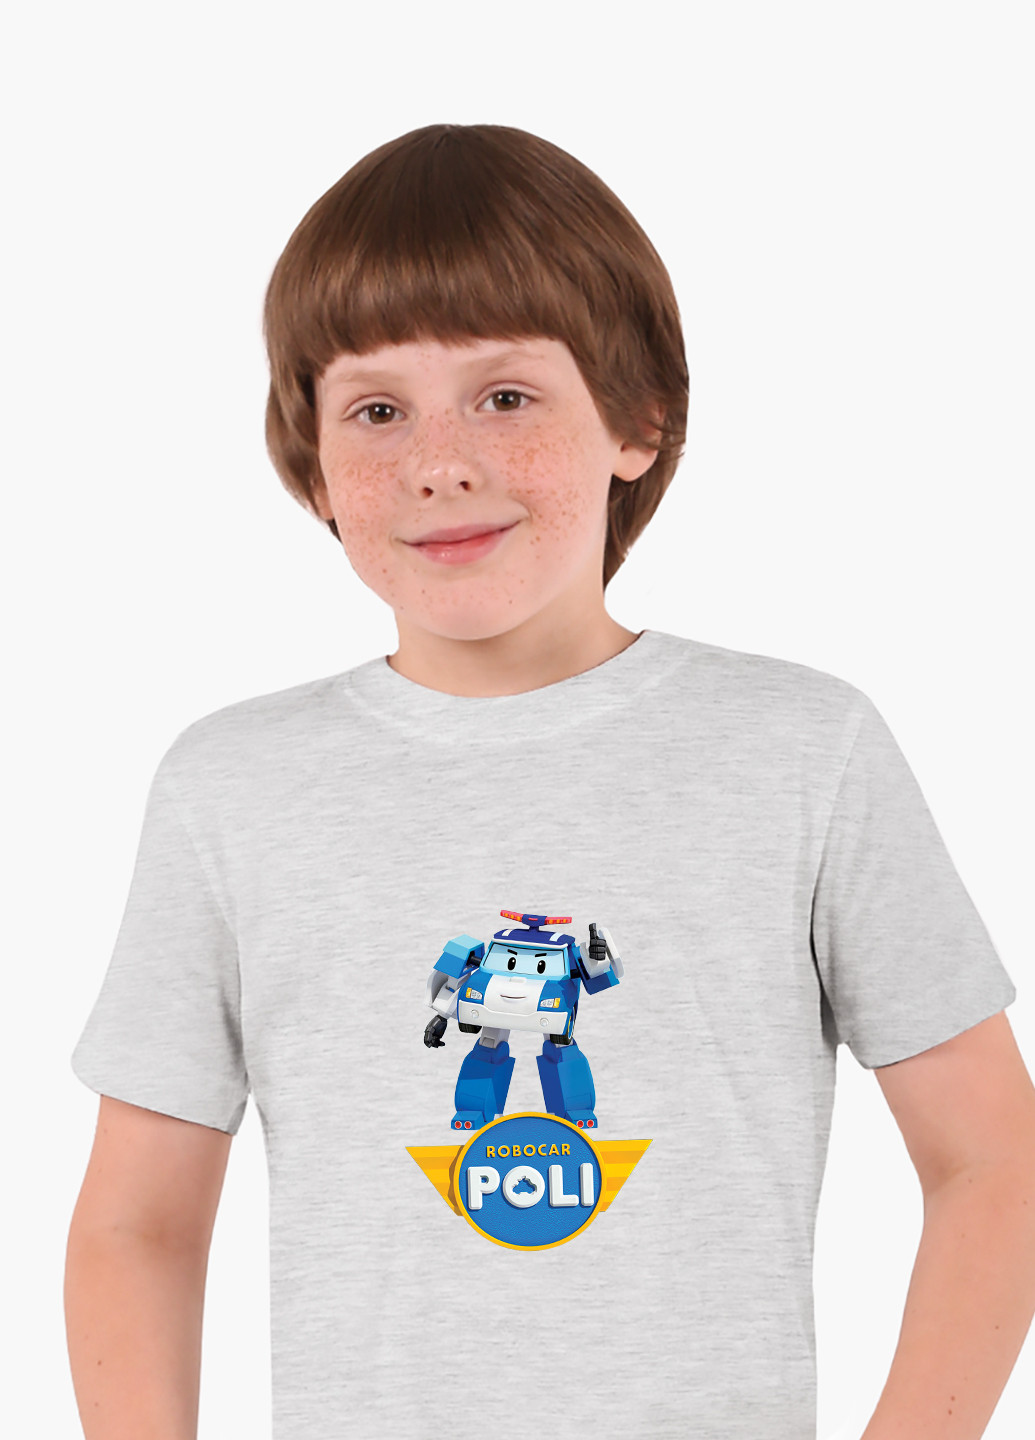 Светло-серая демисезонная футболка детская робокар поли (robocar poli)(9224-1620) MobiPrint